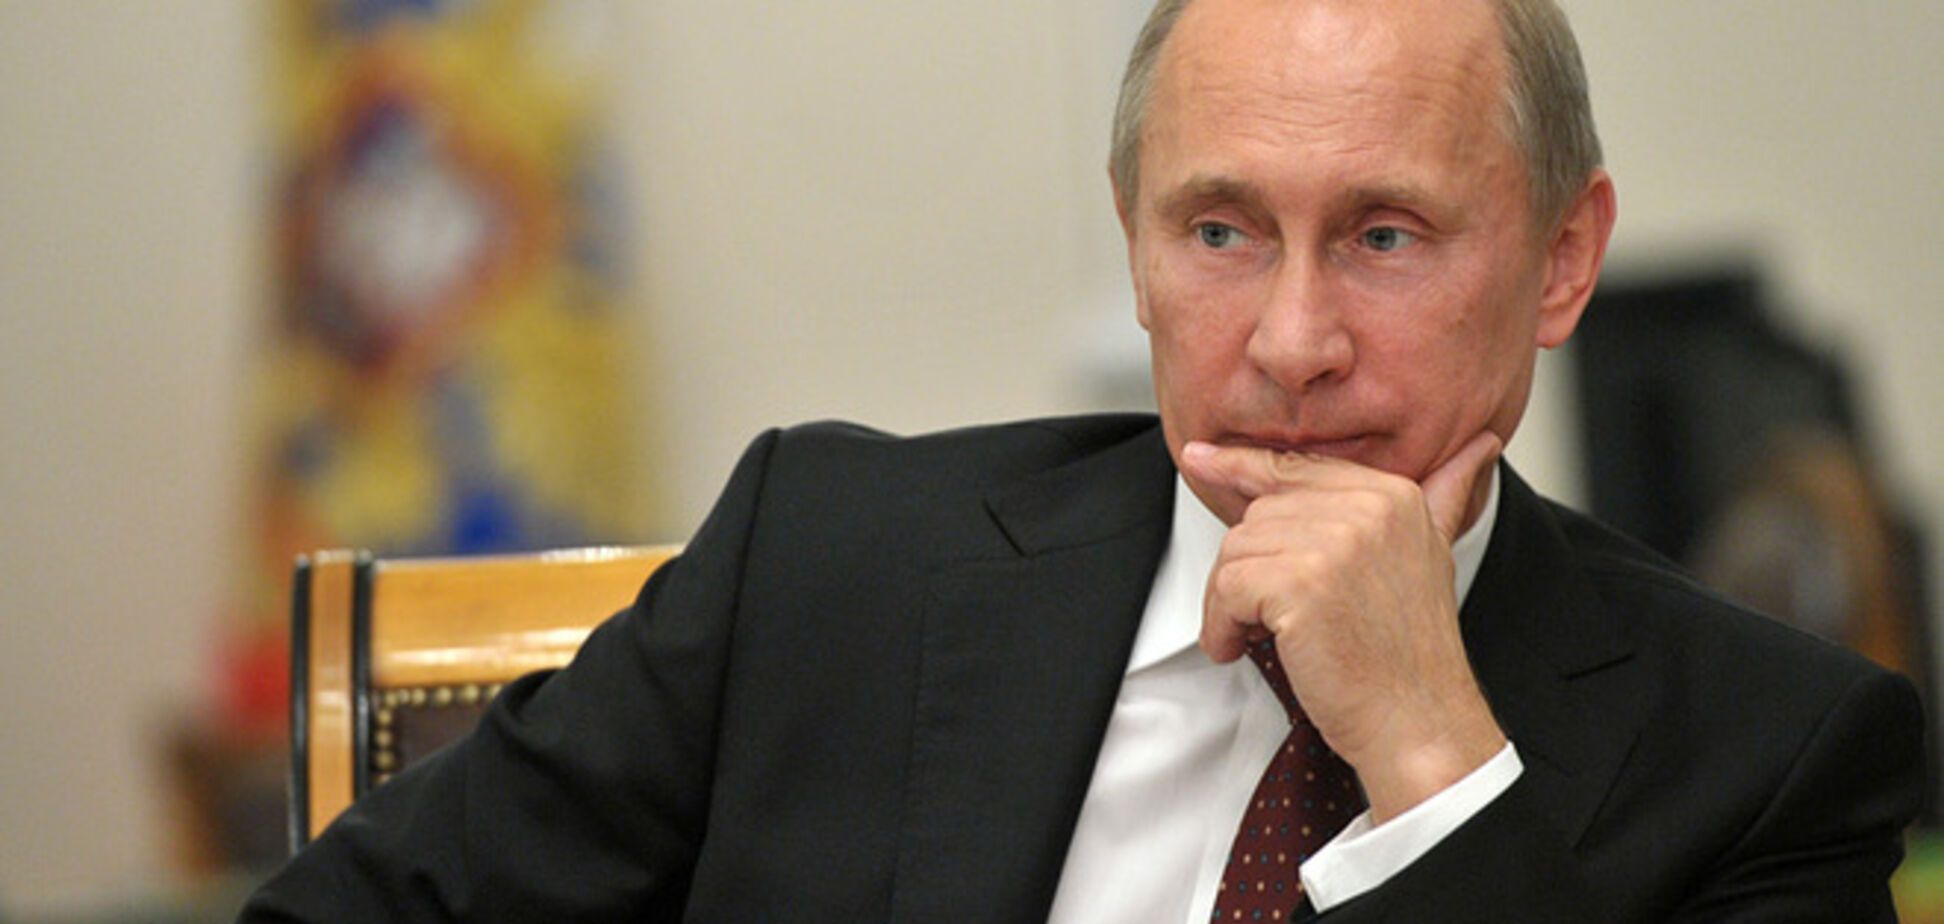 Неожиданный шанс на скорое окончание войны. Стоит ли верить Путину?